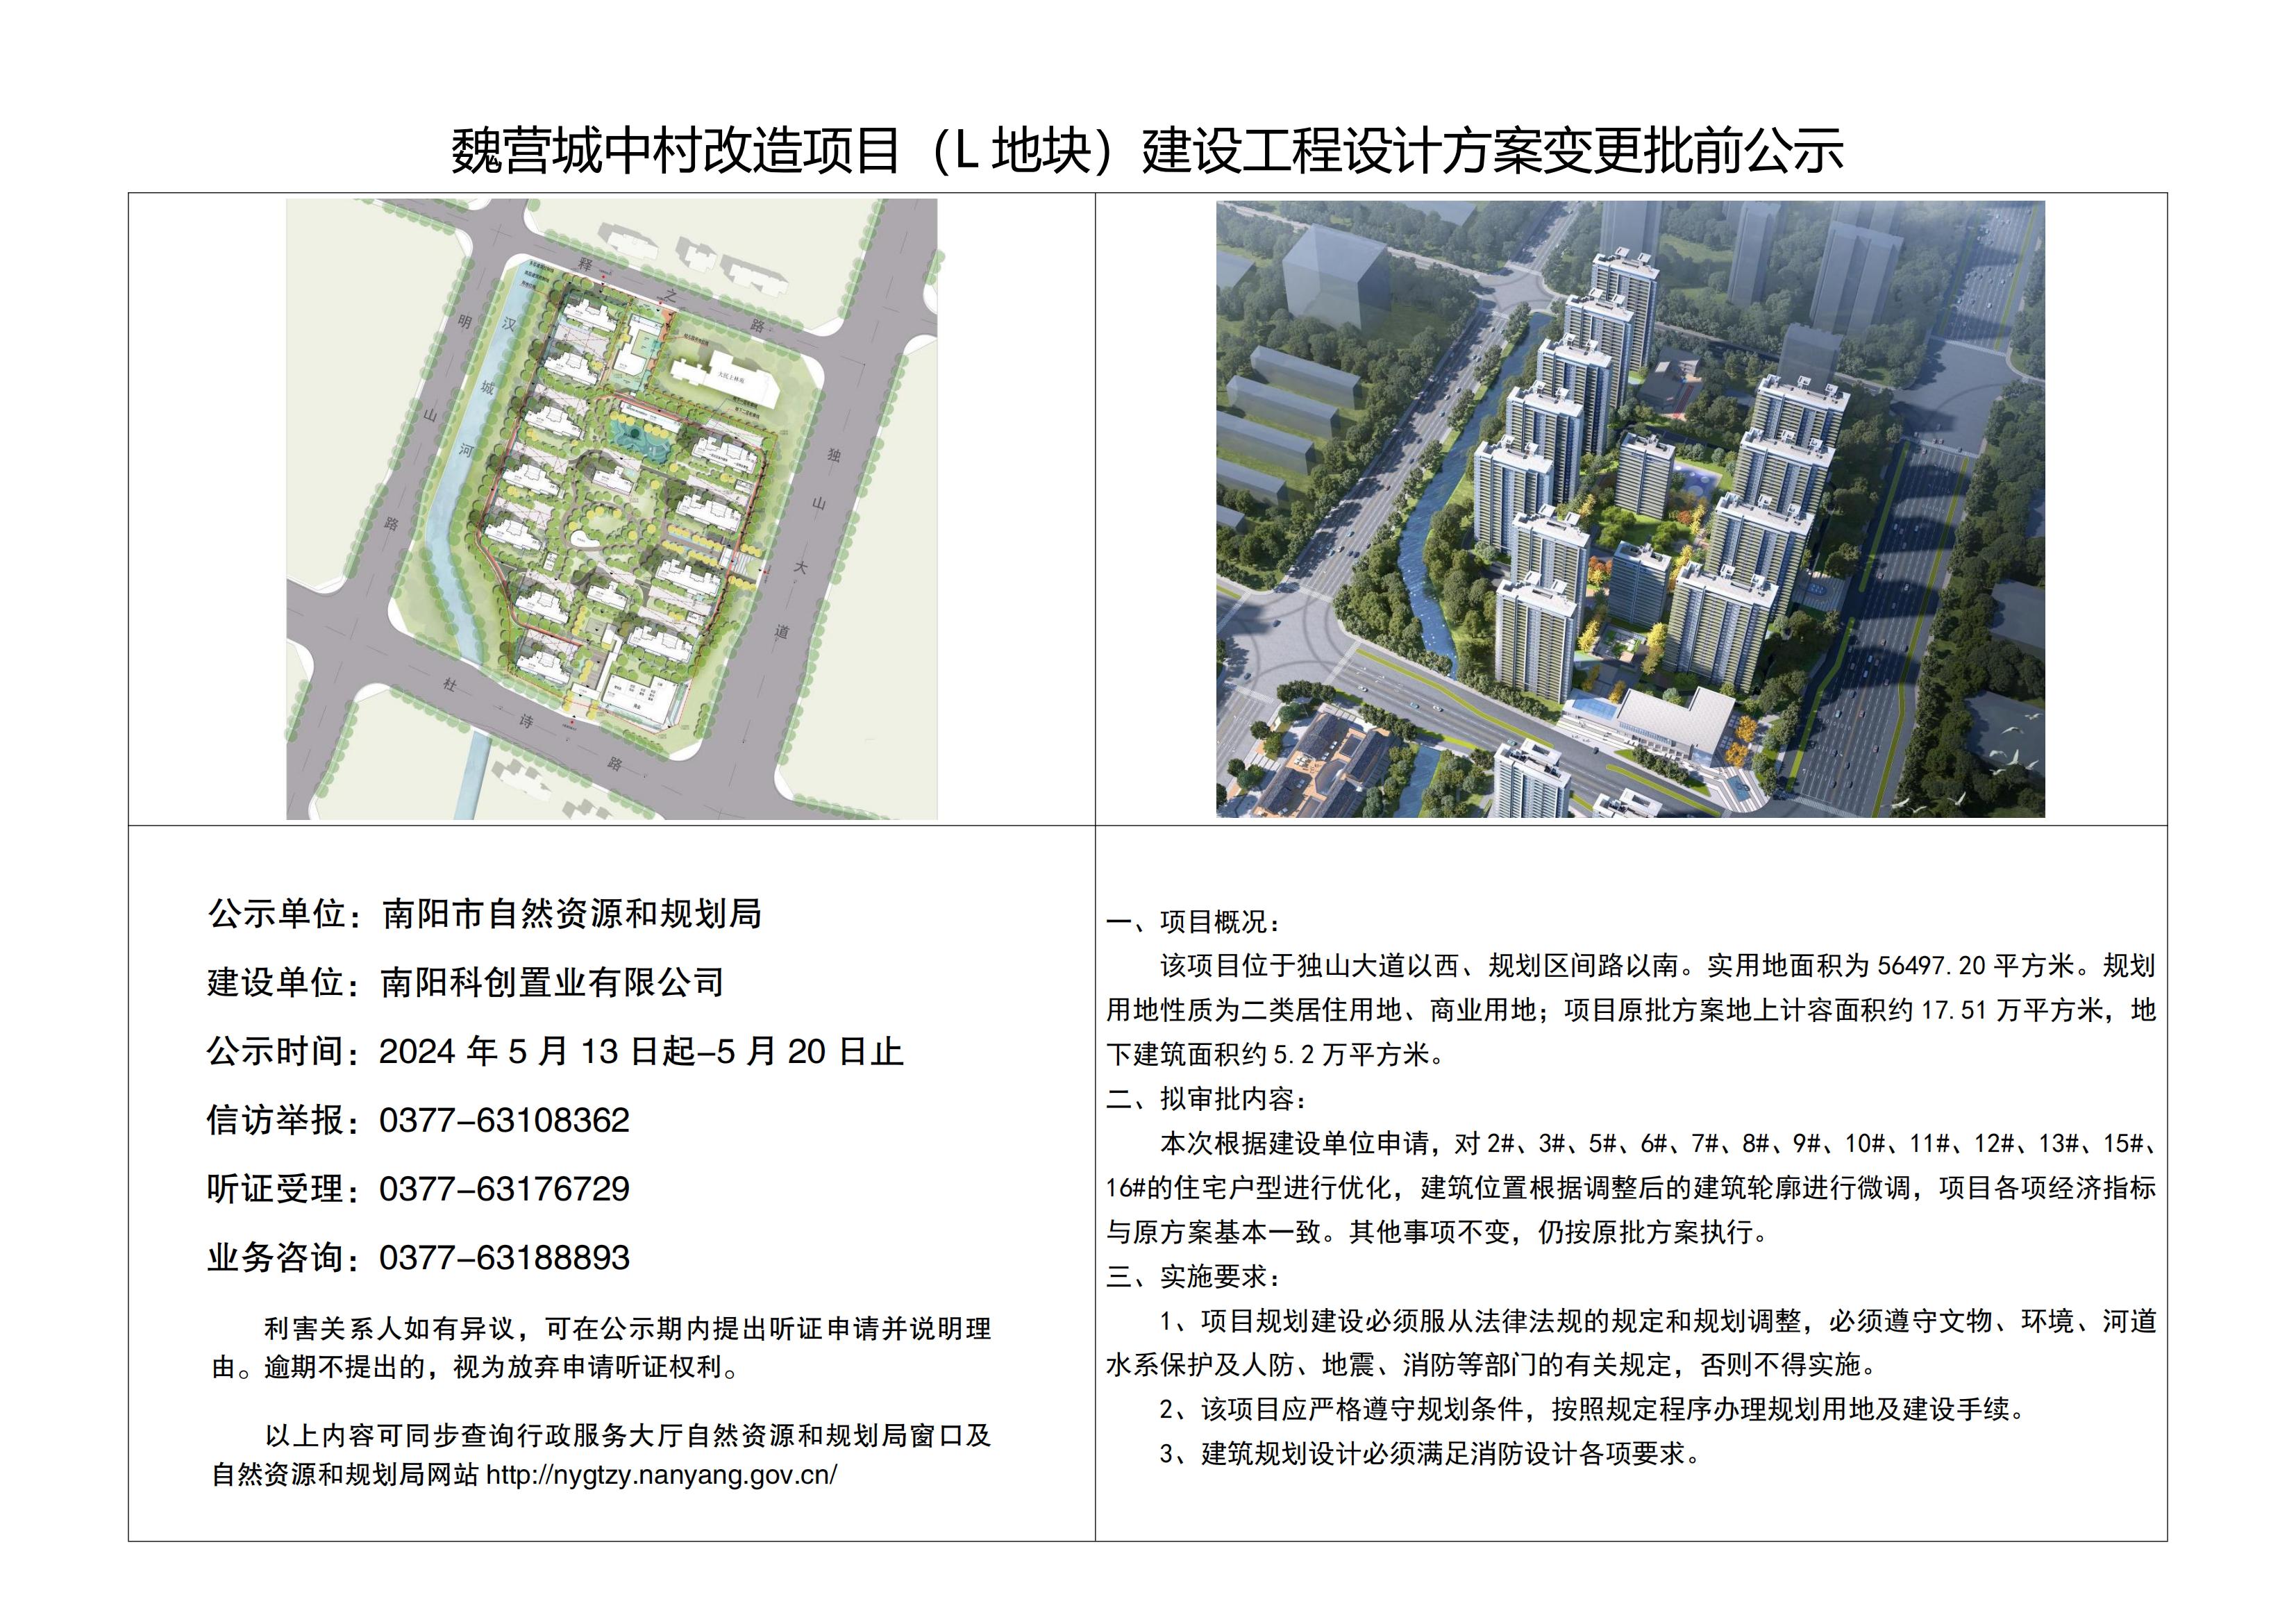 魏营城中村改造项目(L地块)建设工程设计方案变更批前公示